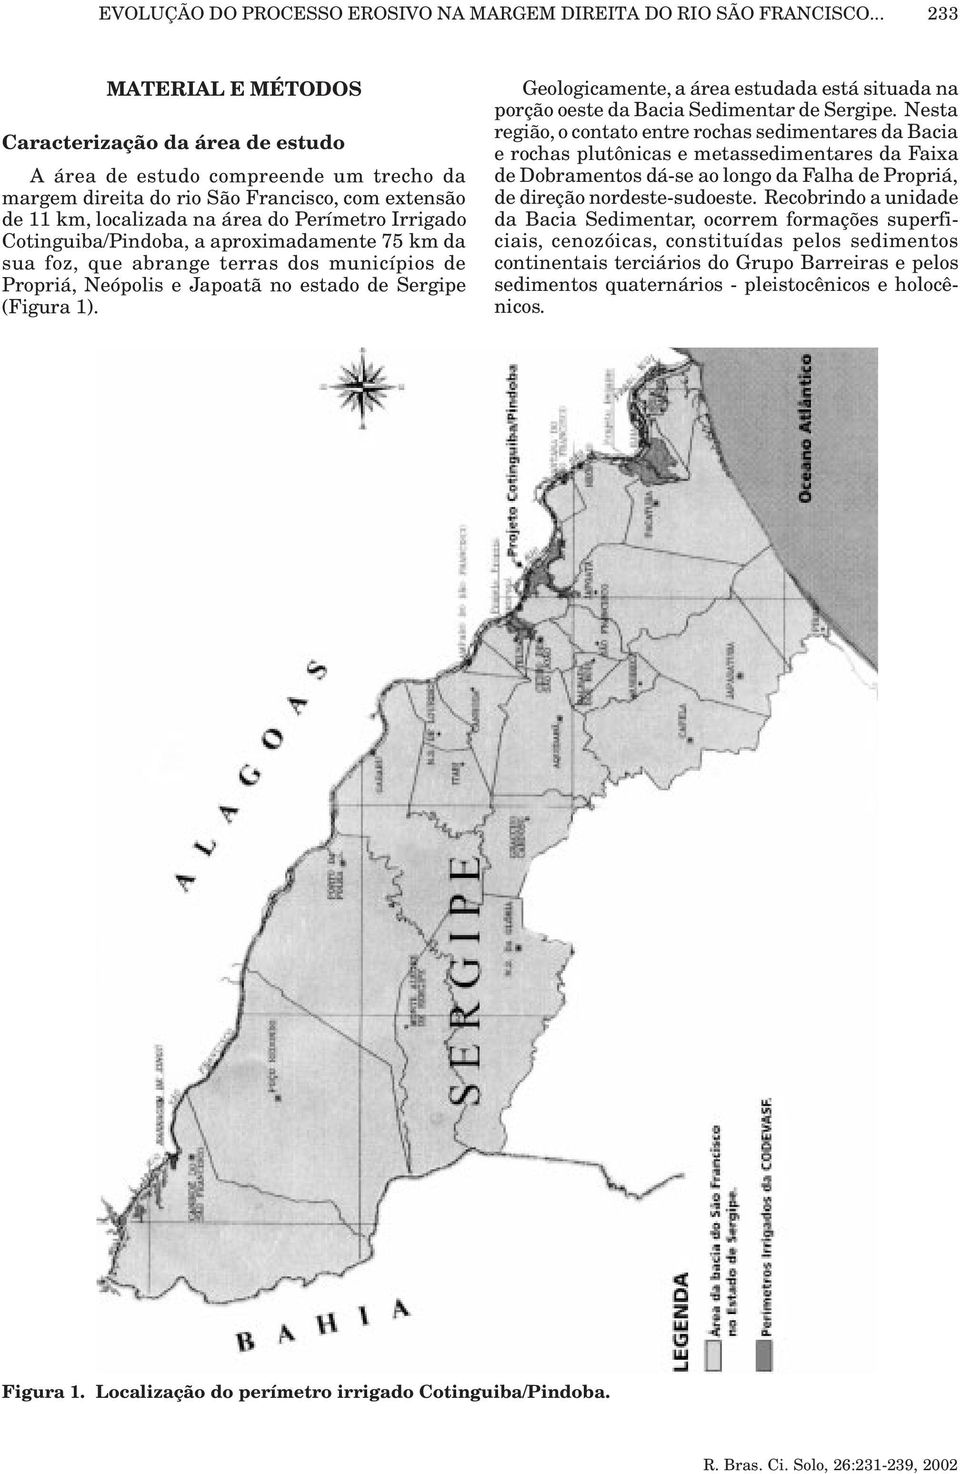 Irrigado Cotinguiba/Pindoba, a aproximadamente 75 km da sua foz, que abrange terras dos municípios de Propriá, Neópolis e Japoatã no estado de Sergipe (Figura 1).